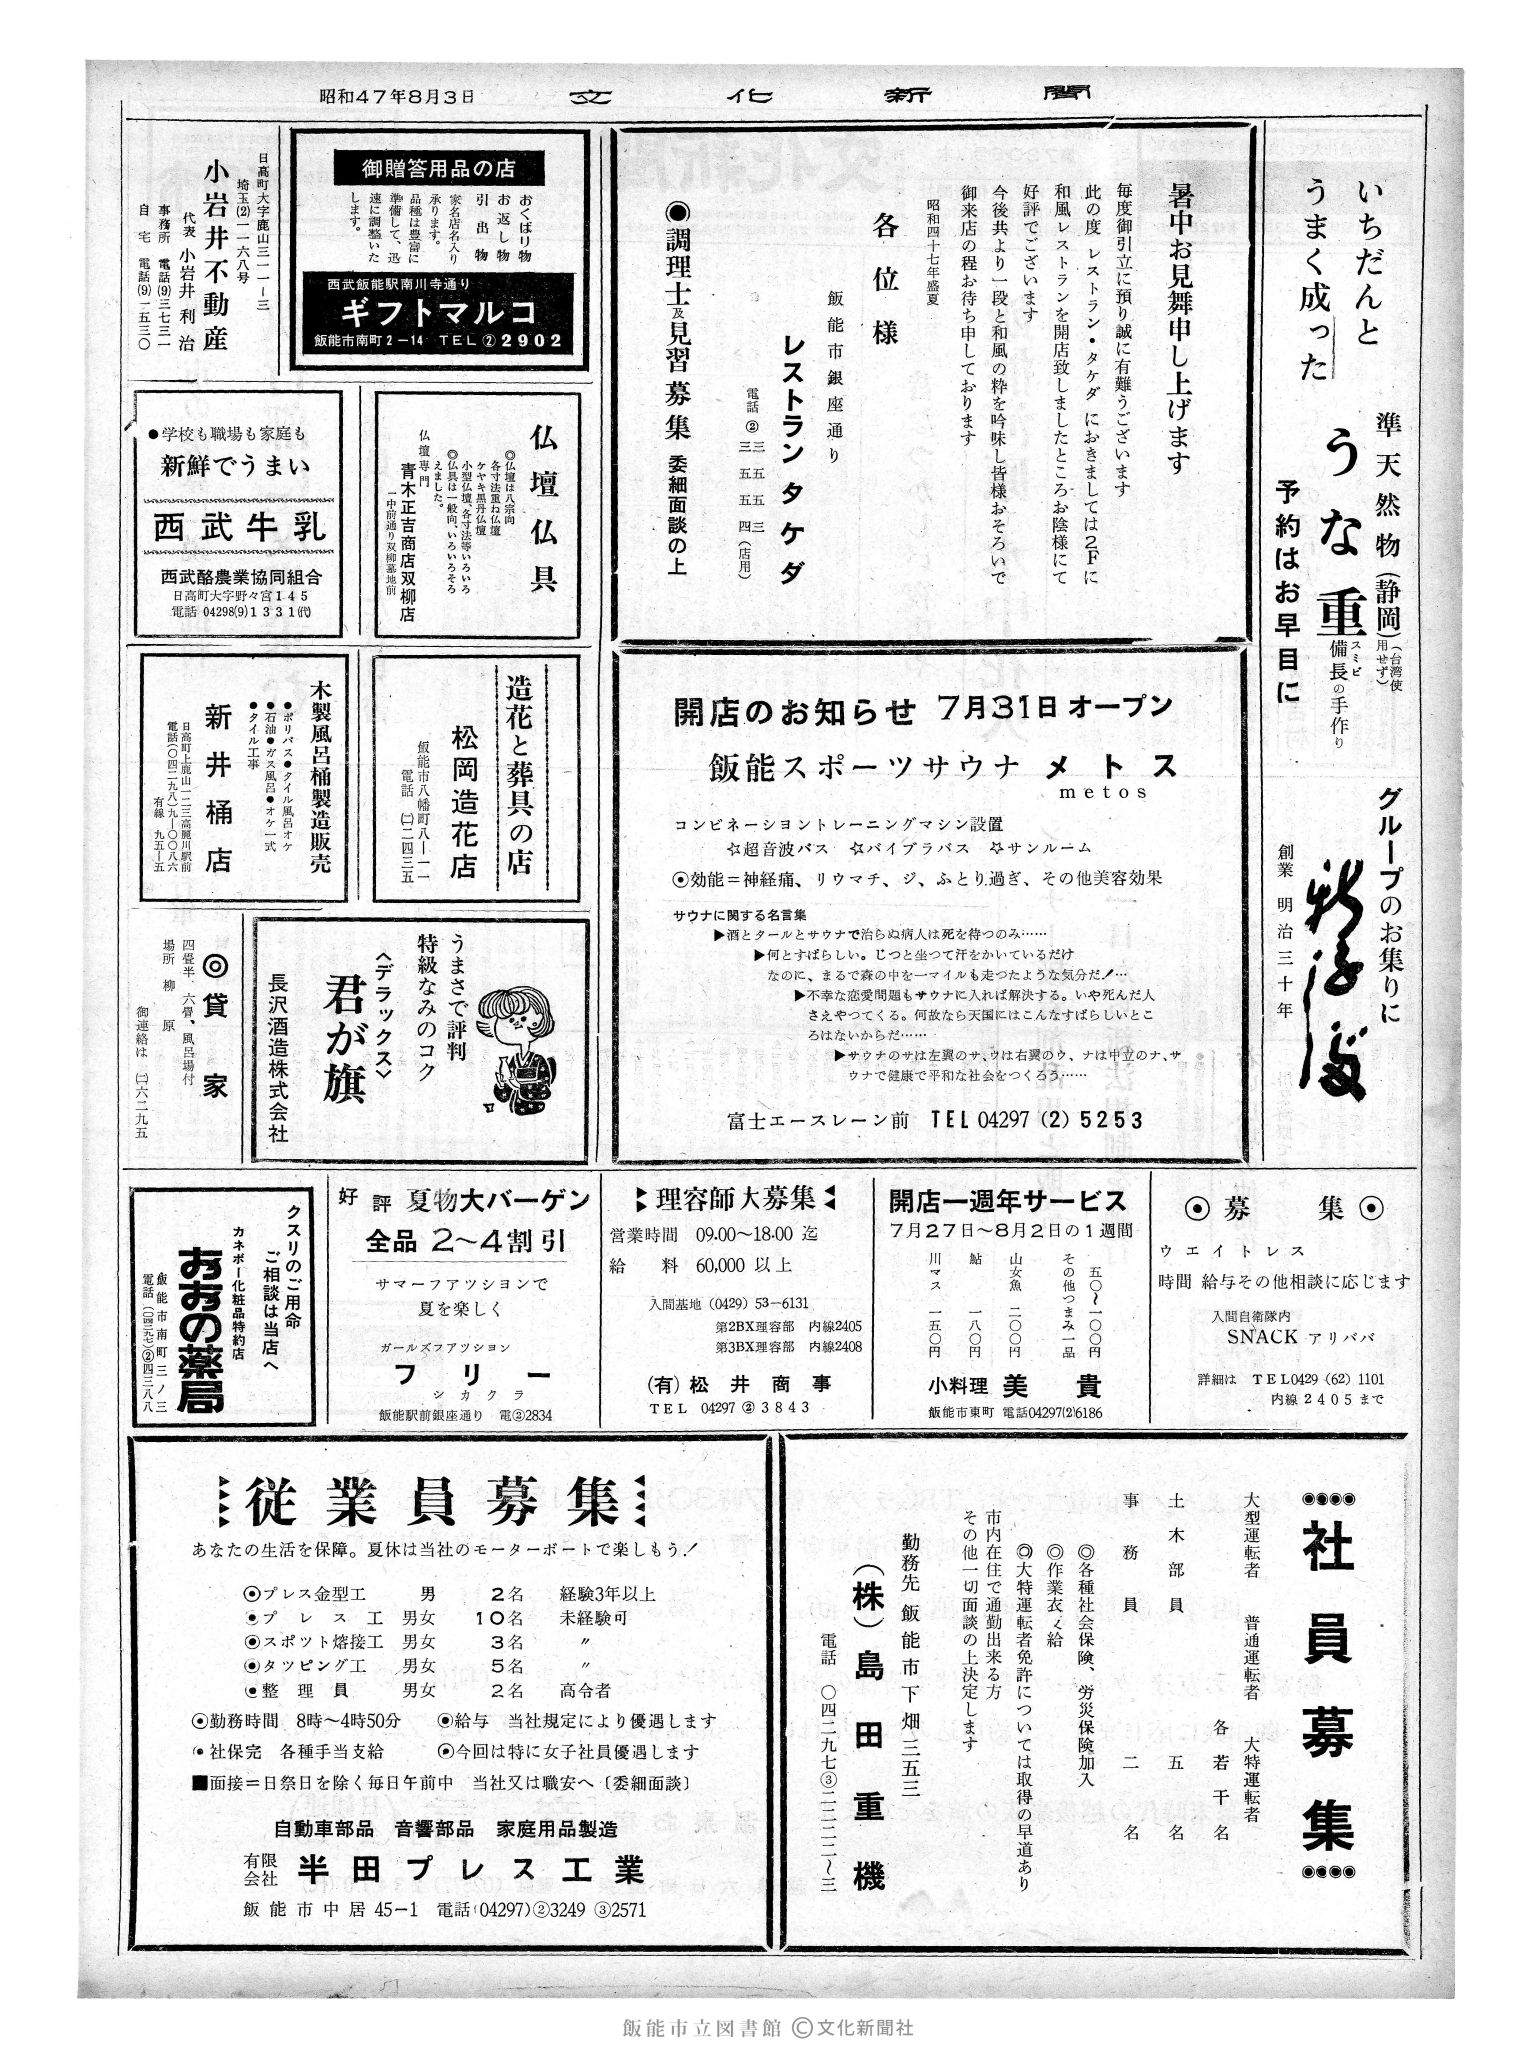 昭和47年8月3日2面 (第7306号) 広告ページ